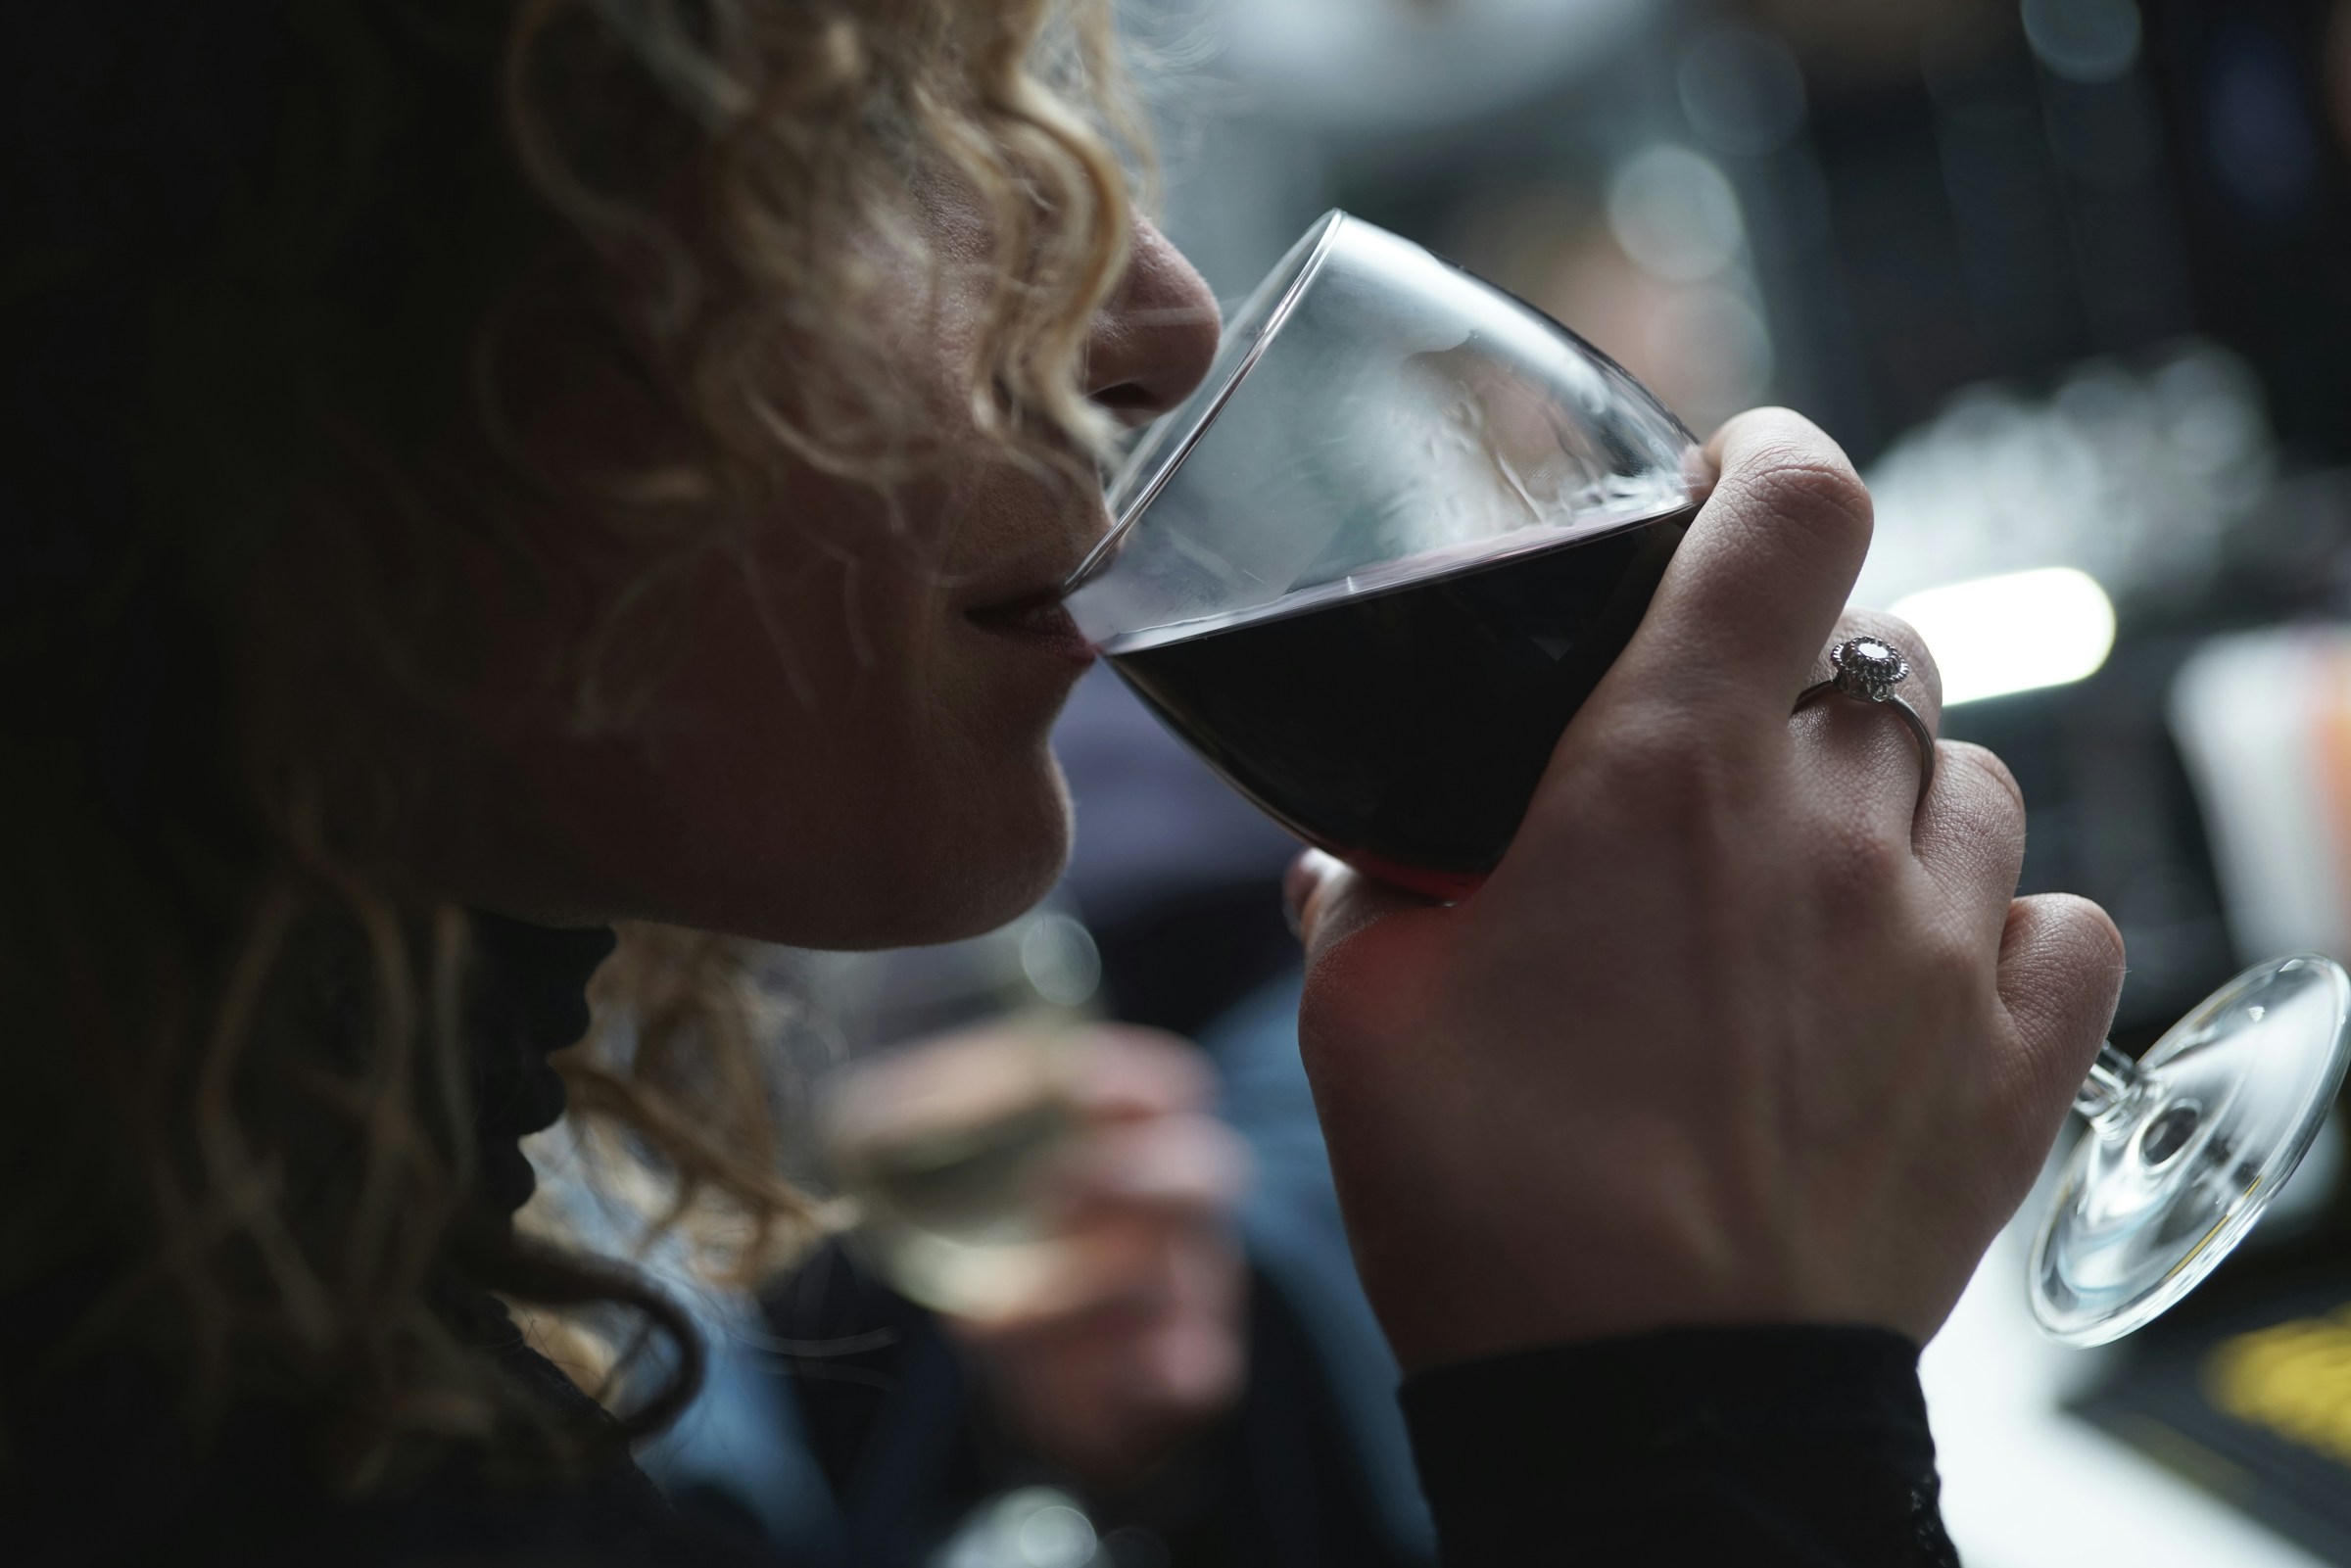 Une femme qui boit du vin | Source : Unsplash